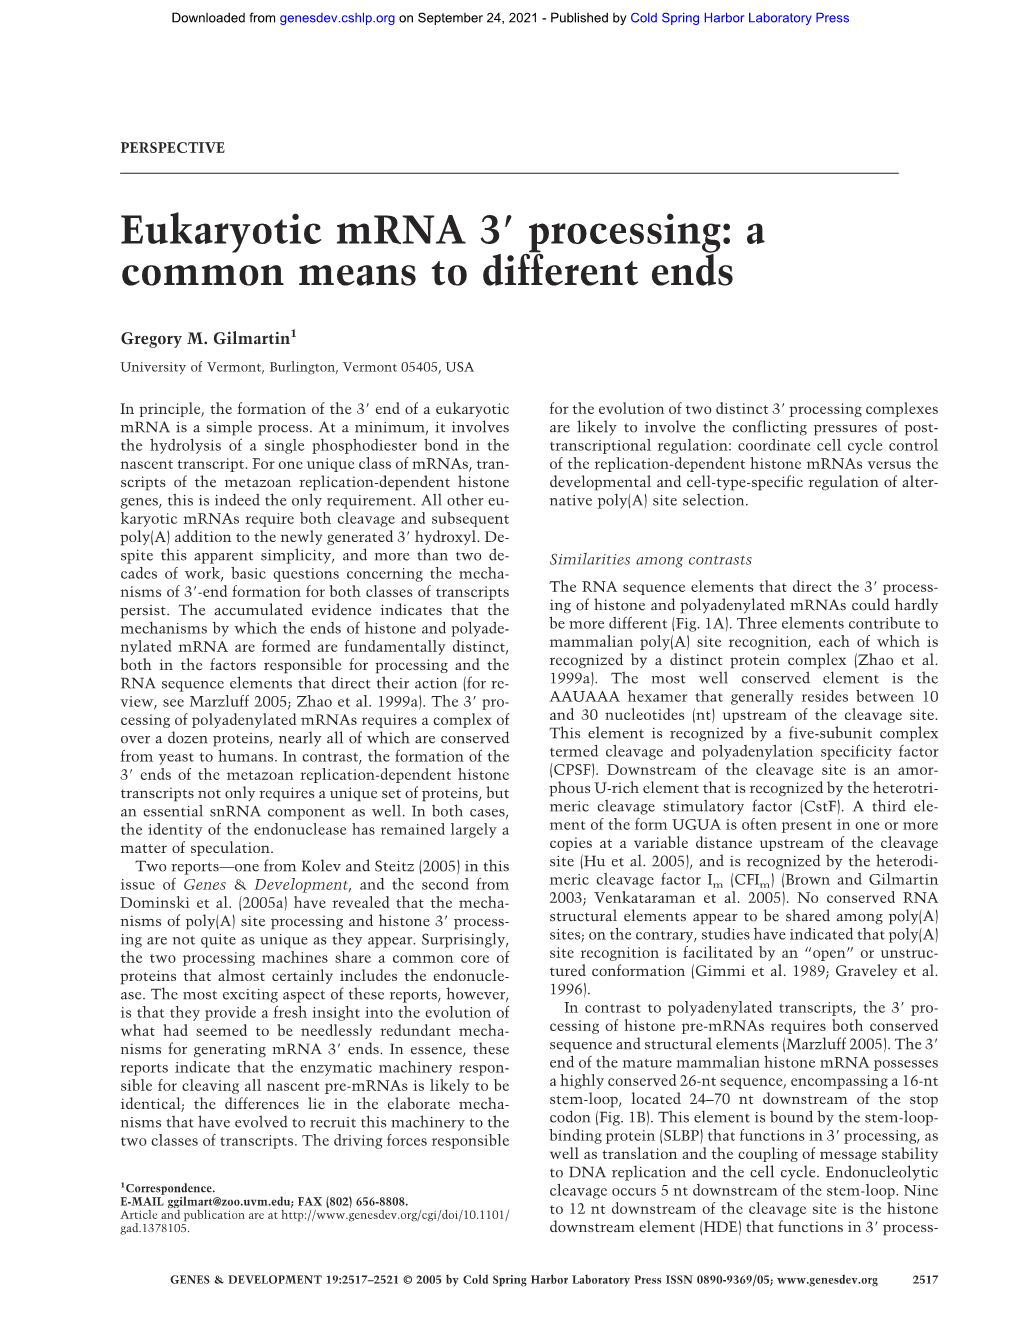 Eukaryotic Mrna 3 Processing